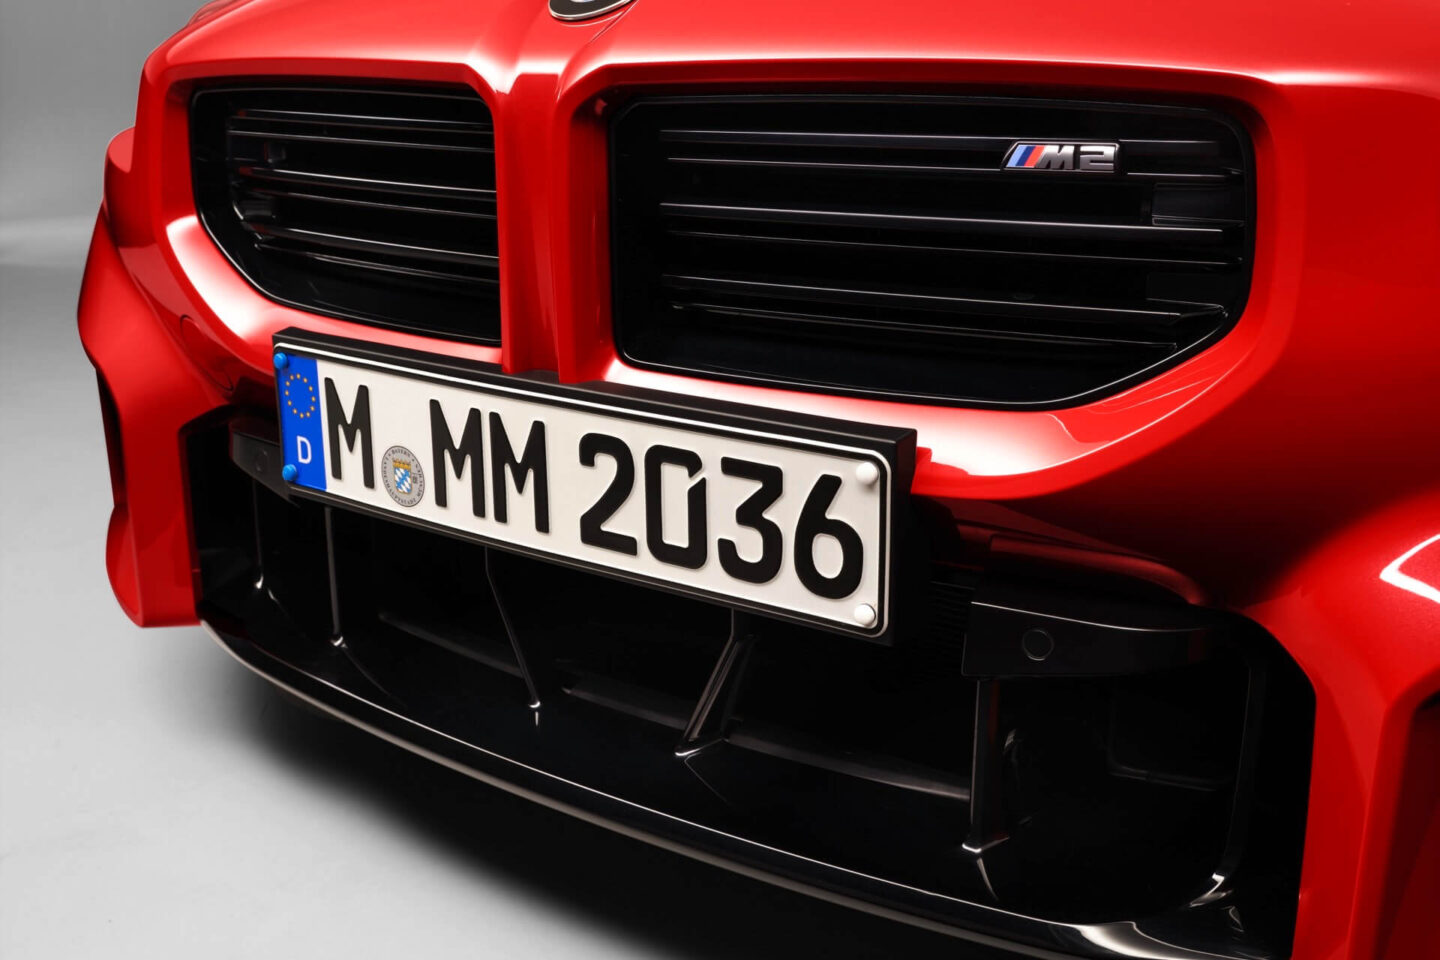 BMW M2 pormenor grelha dianteira